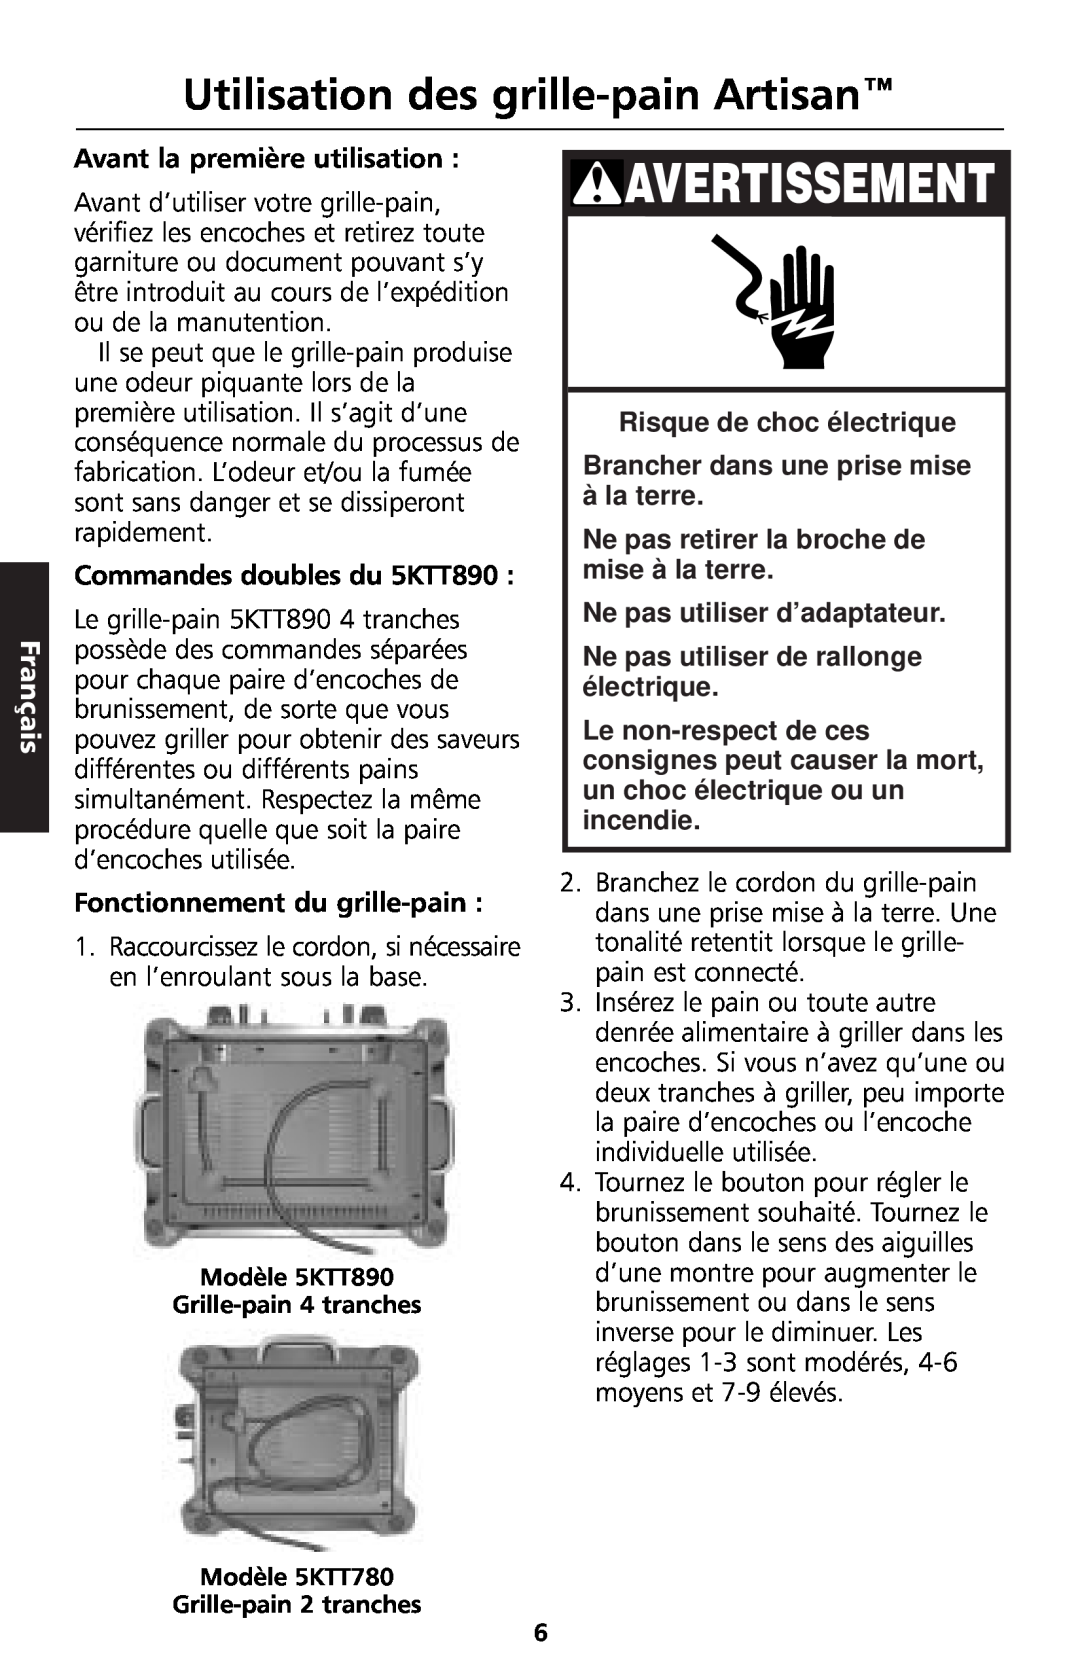 KitchenAid 5KTT890 manual Utilisation des grille-painArtisan, Avertissement, Français, Risque de choc électrique 